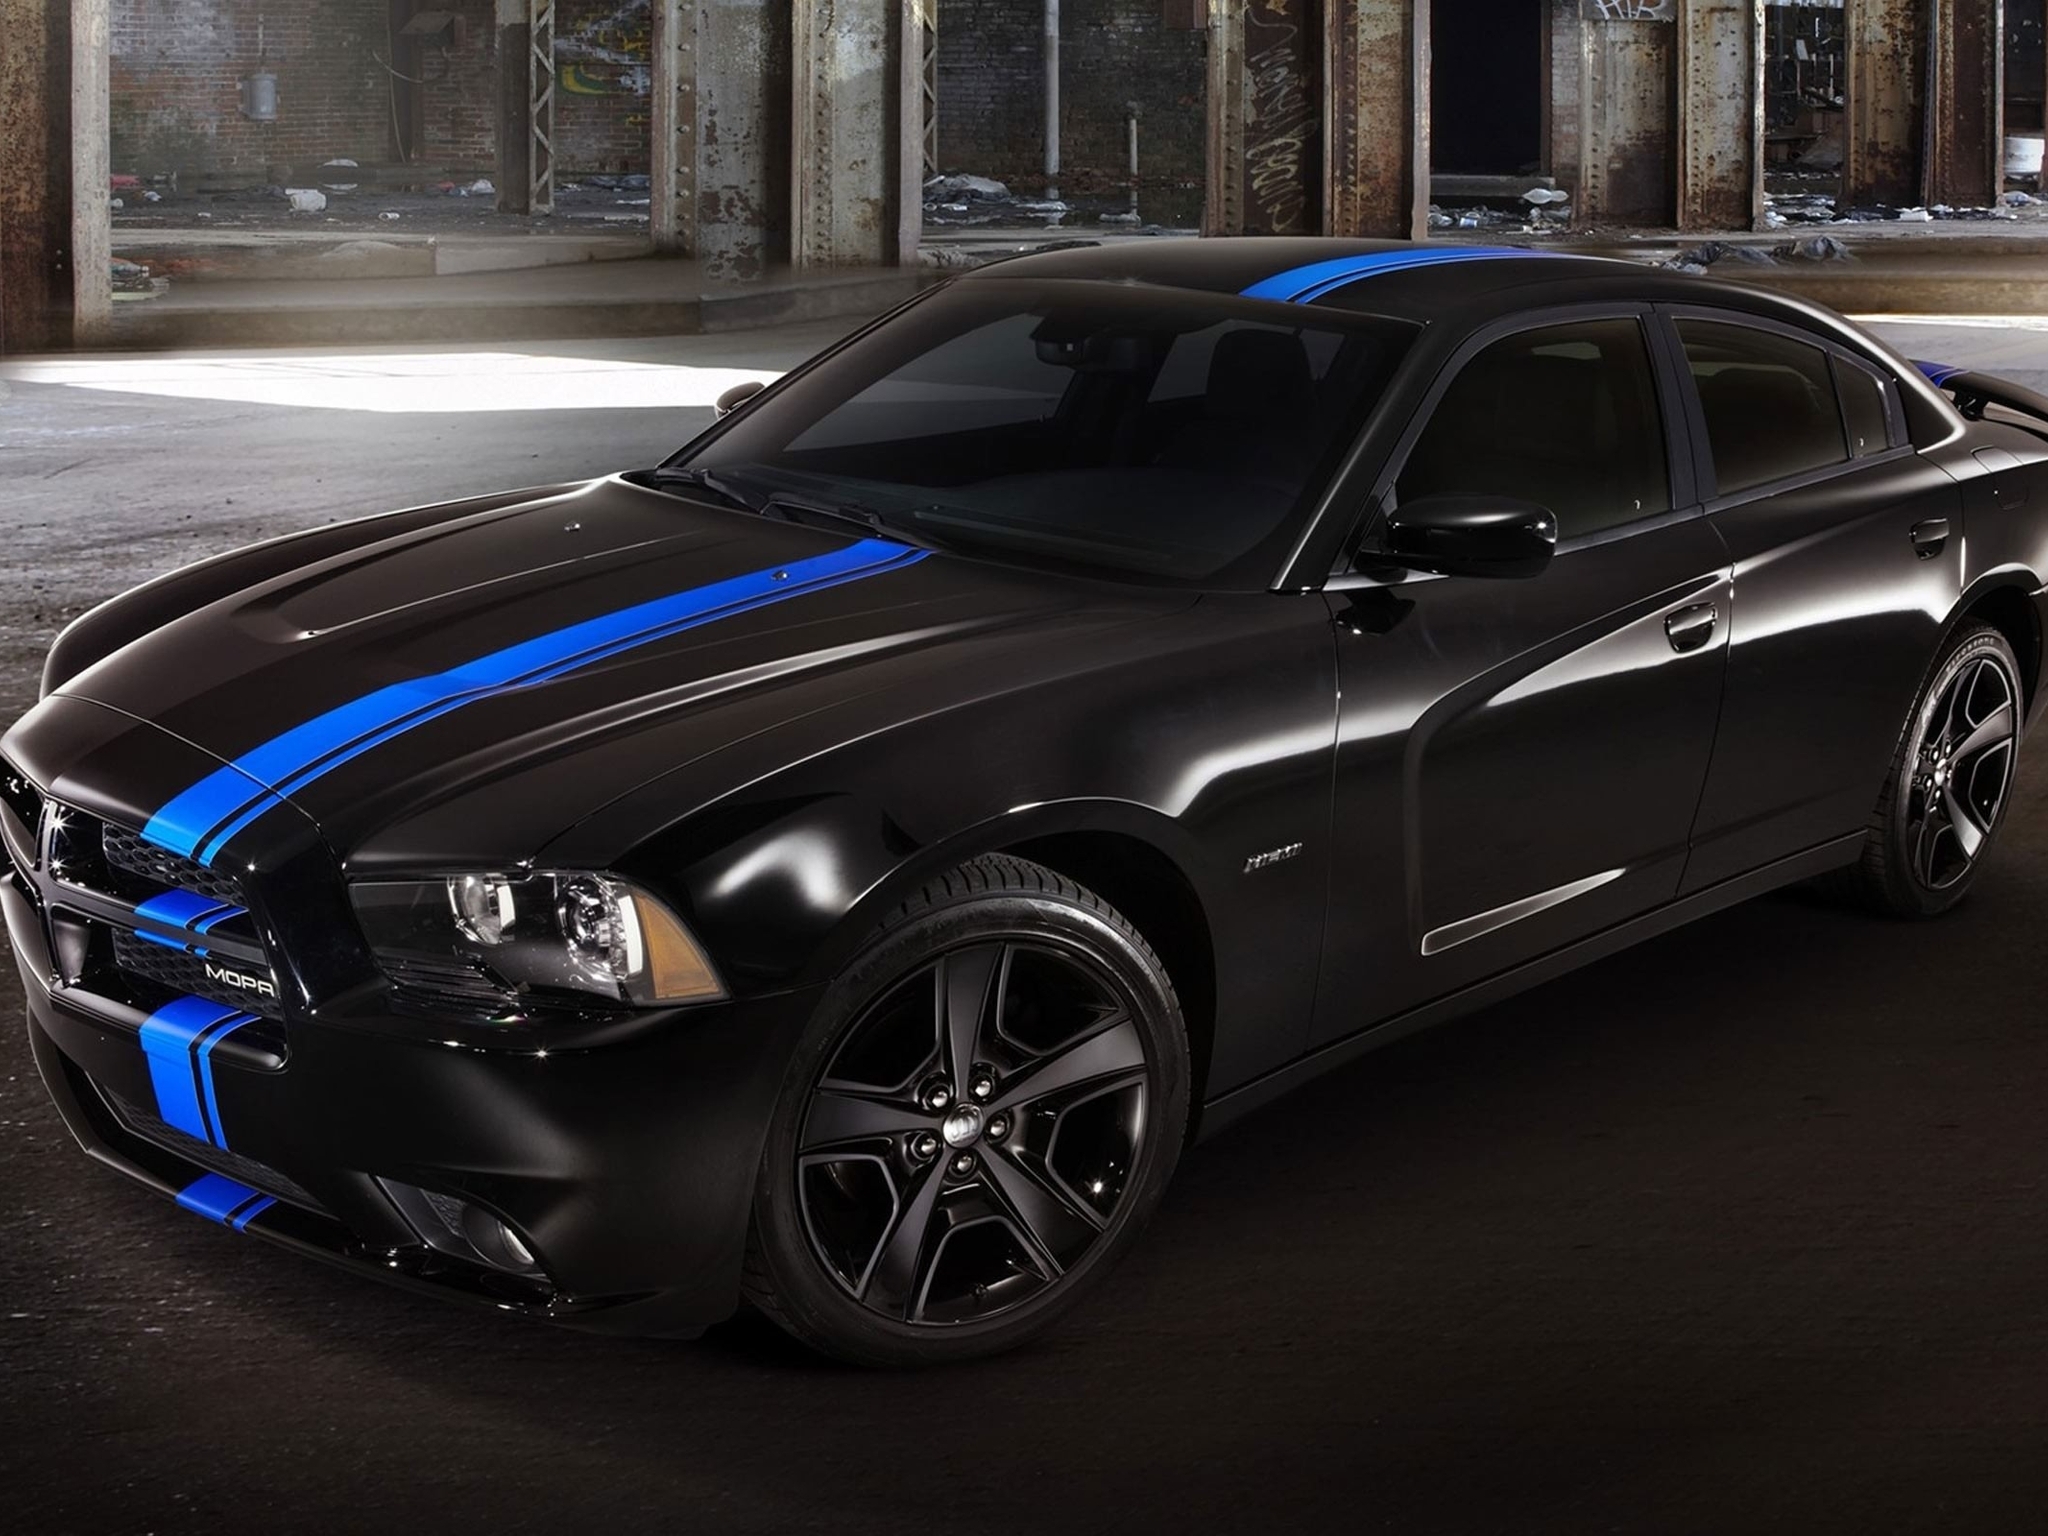 Image: Dodge, Charger, Mopar, black, sports car, blue stripe.